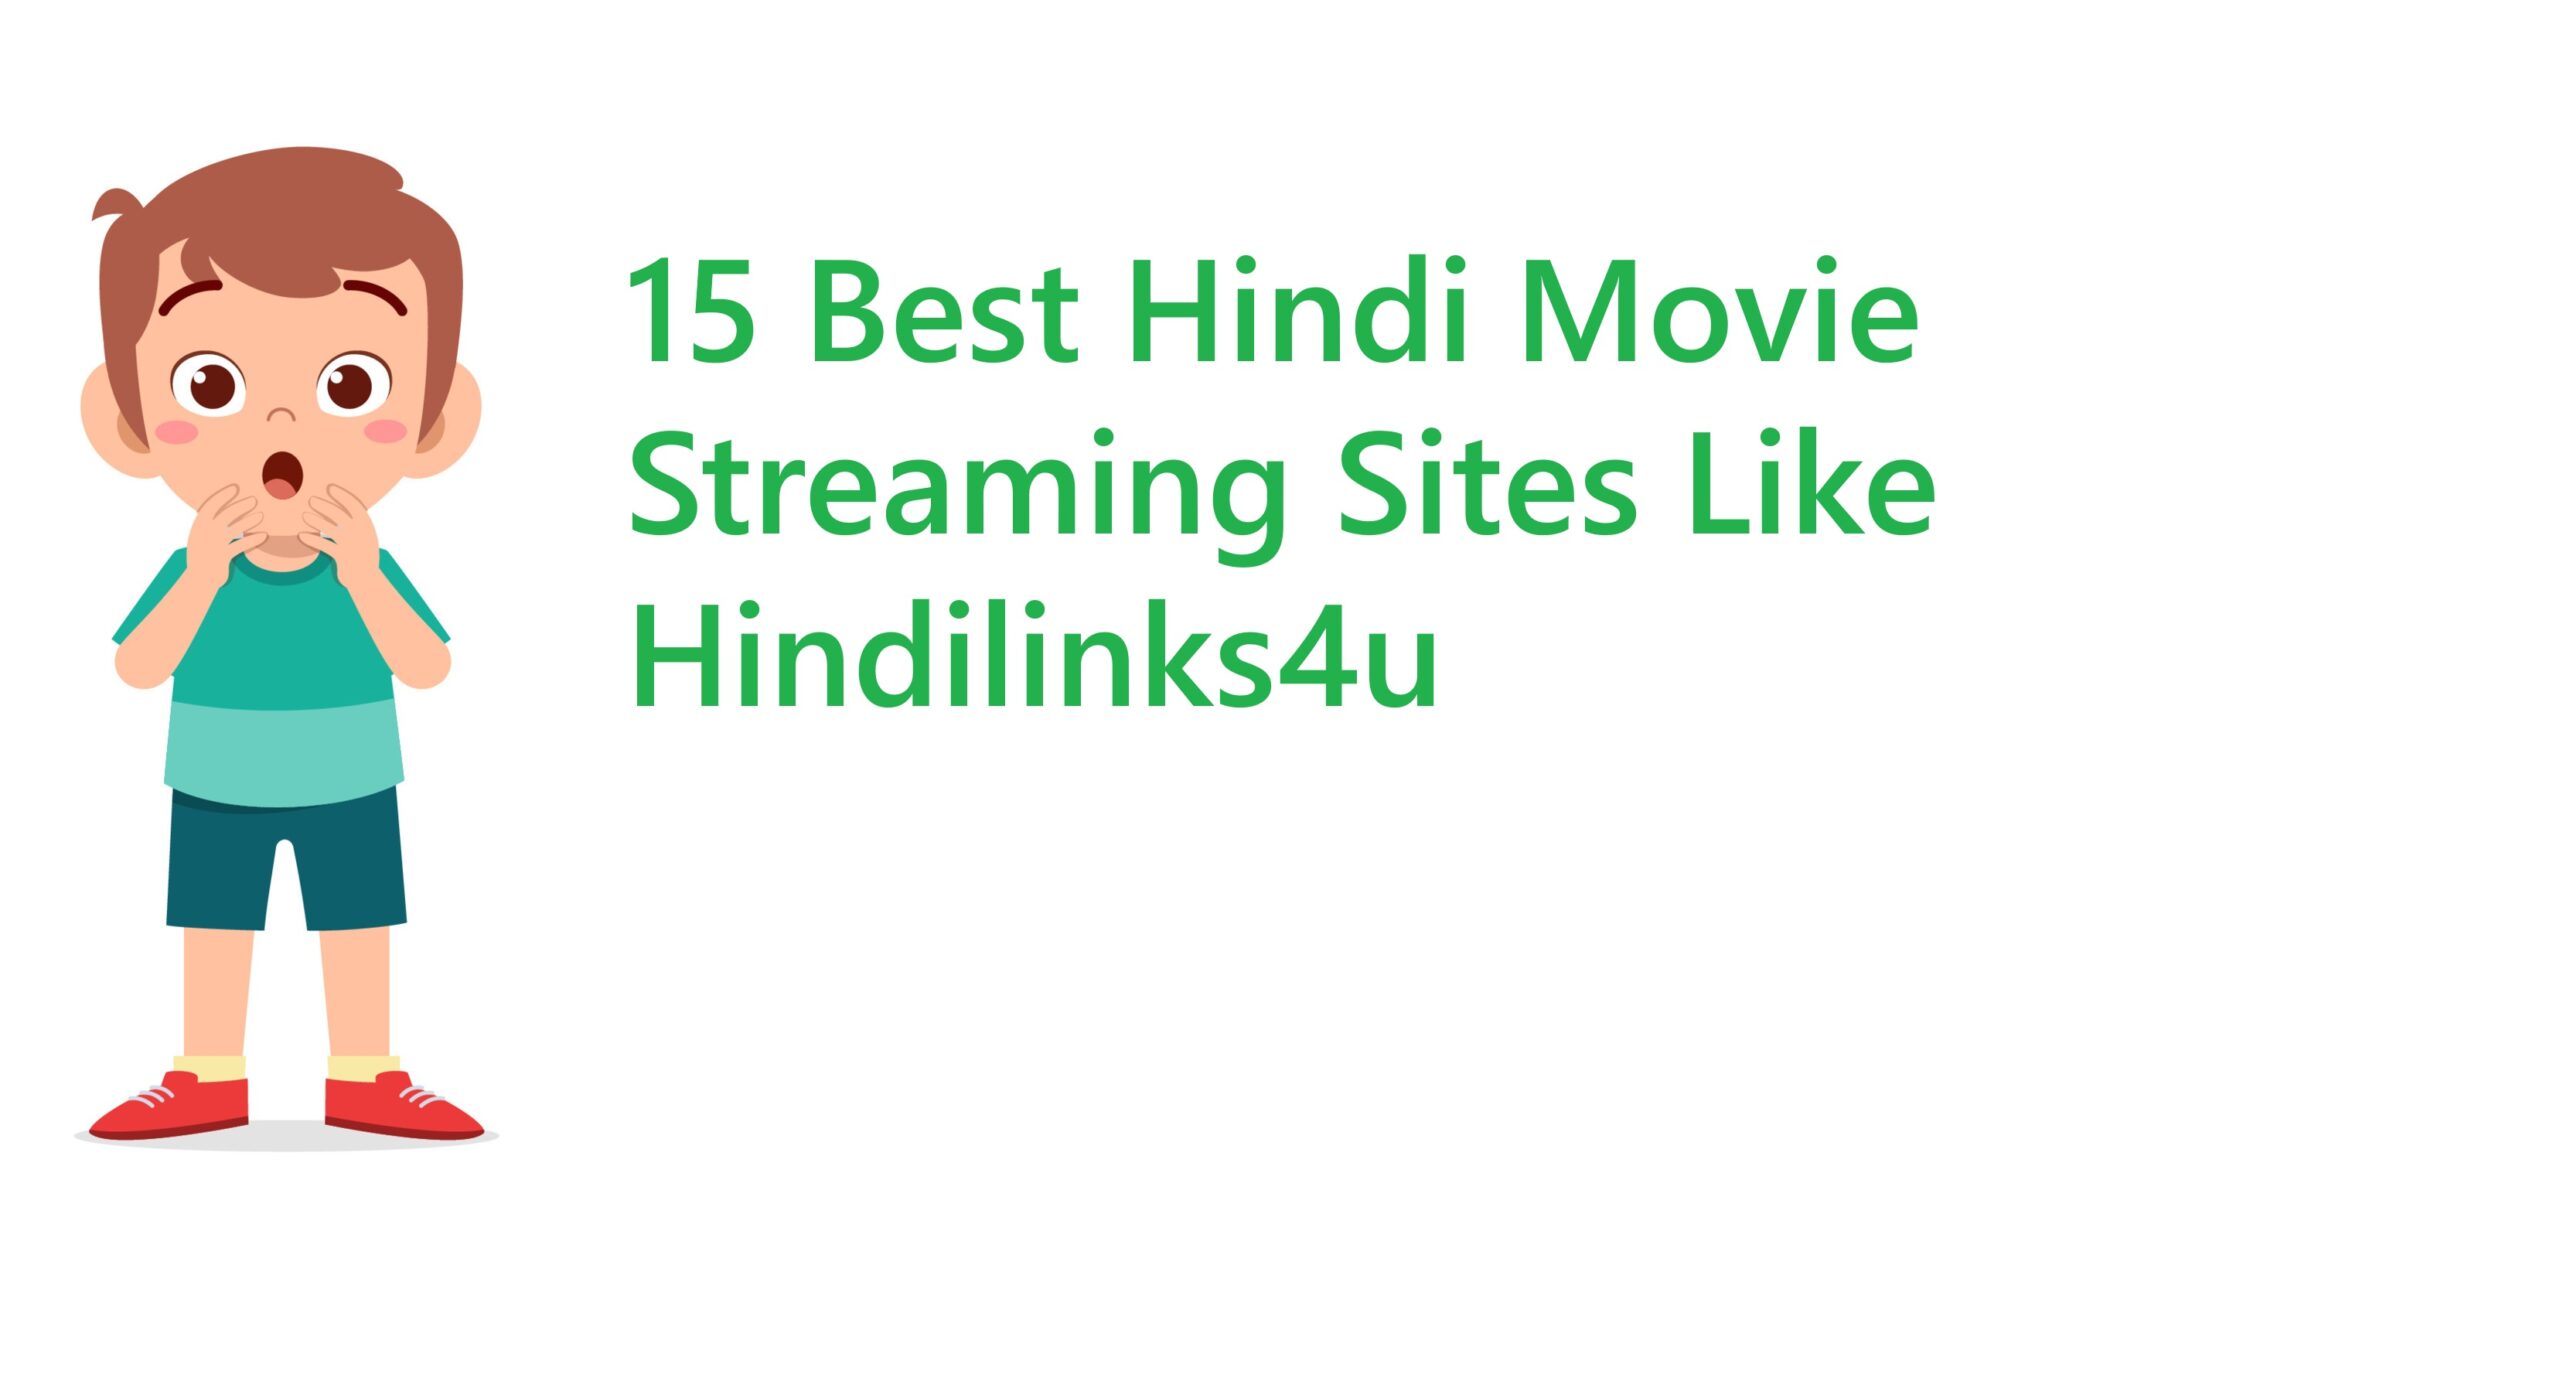 15 Best Hindi Movie Streaming Sites Like Hindilinks4u